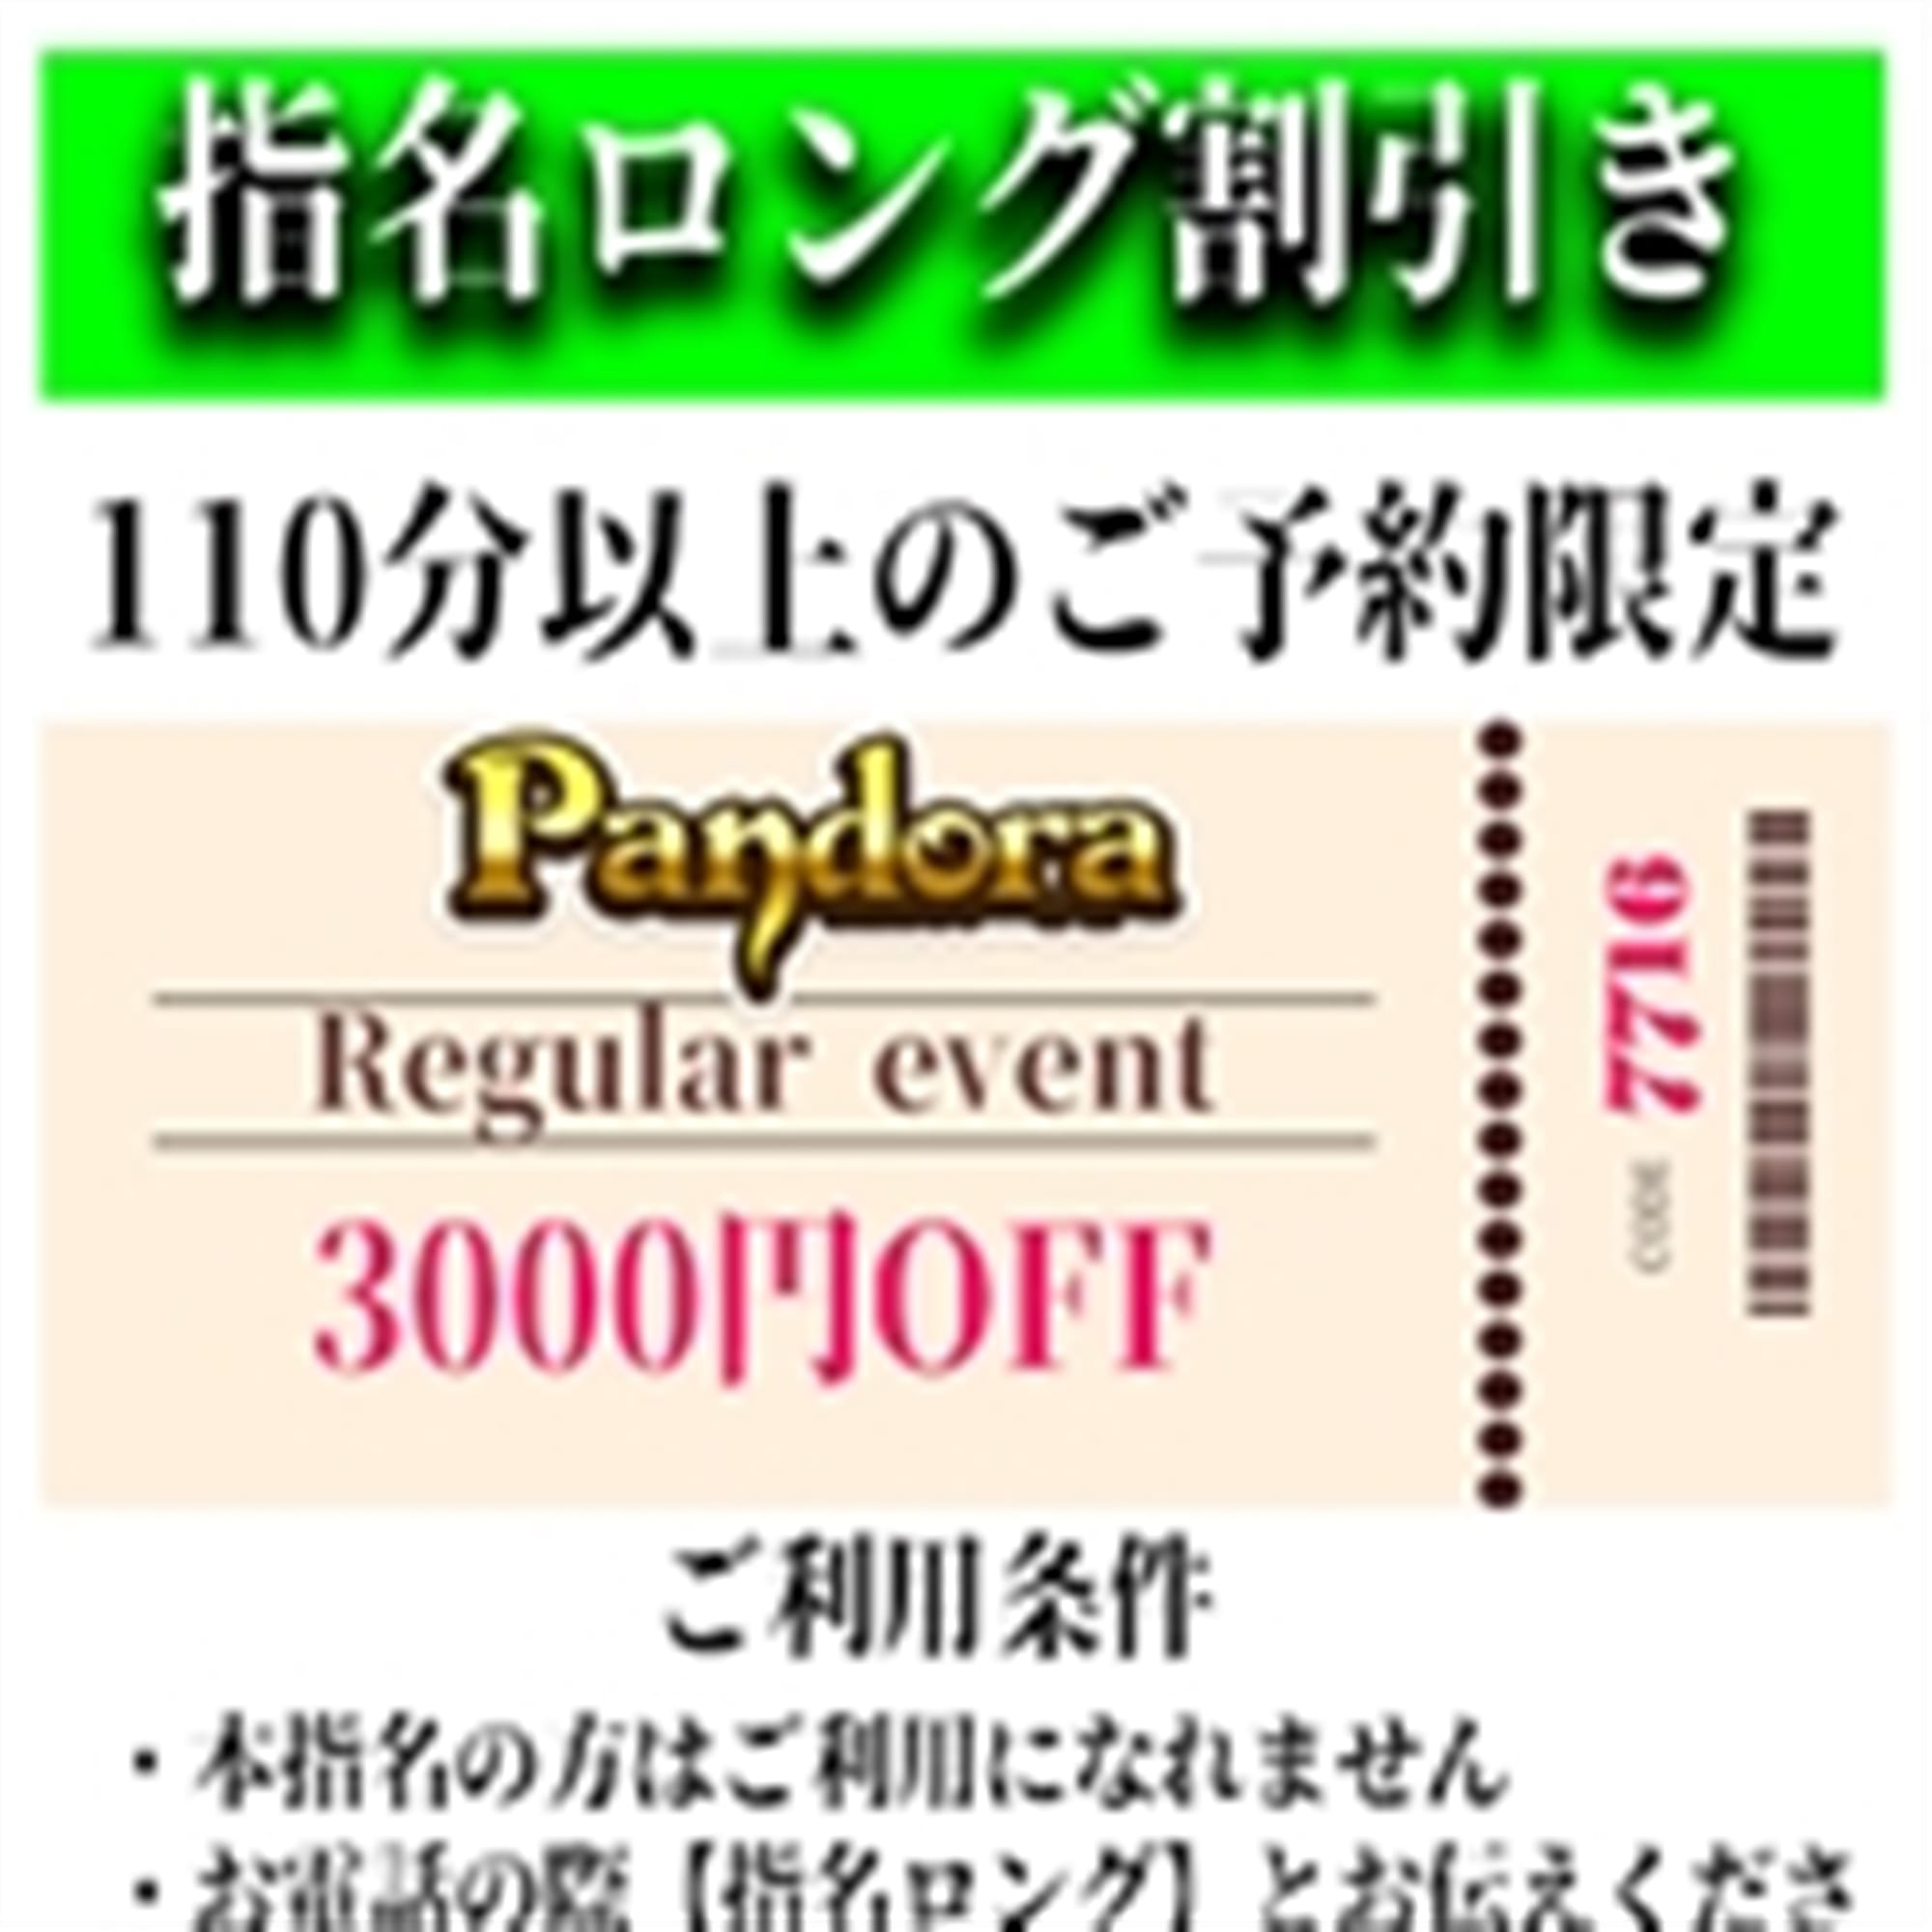 「ご指名のお客様も遊べるロングコース割引」04/27(土) 10:58 | Pandora(パンドラ)新潟のお得なニュース